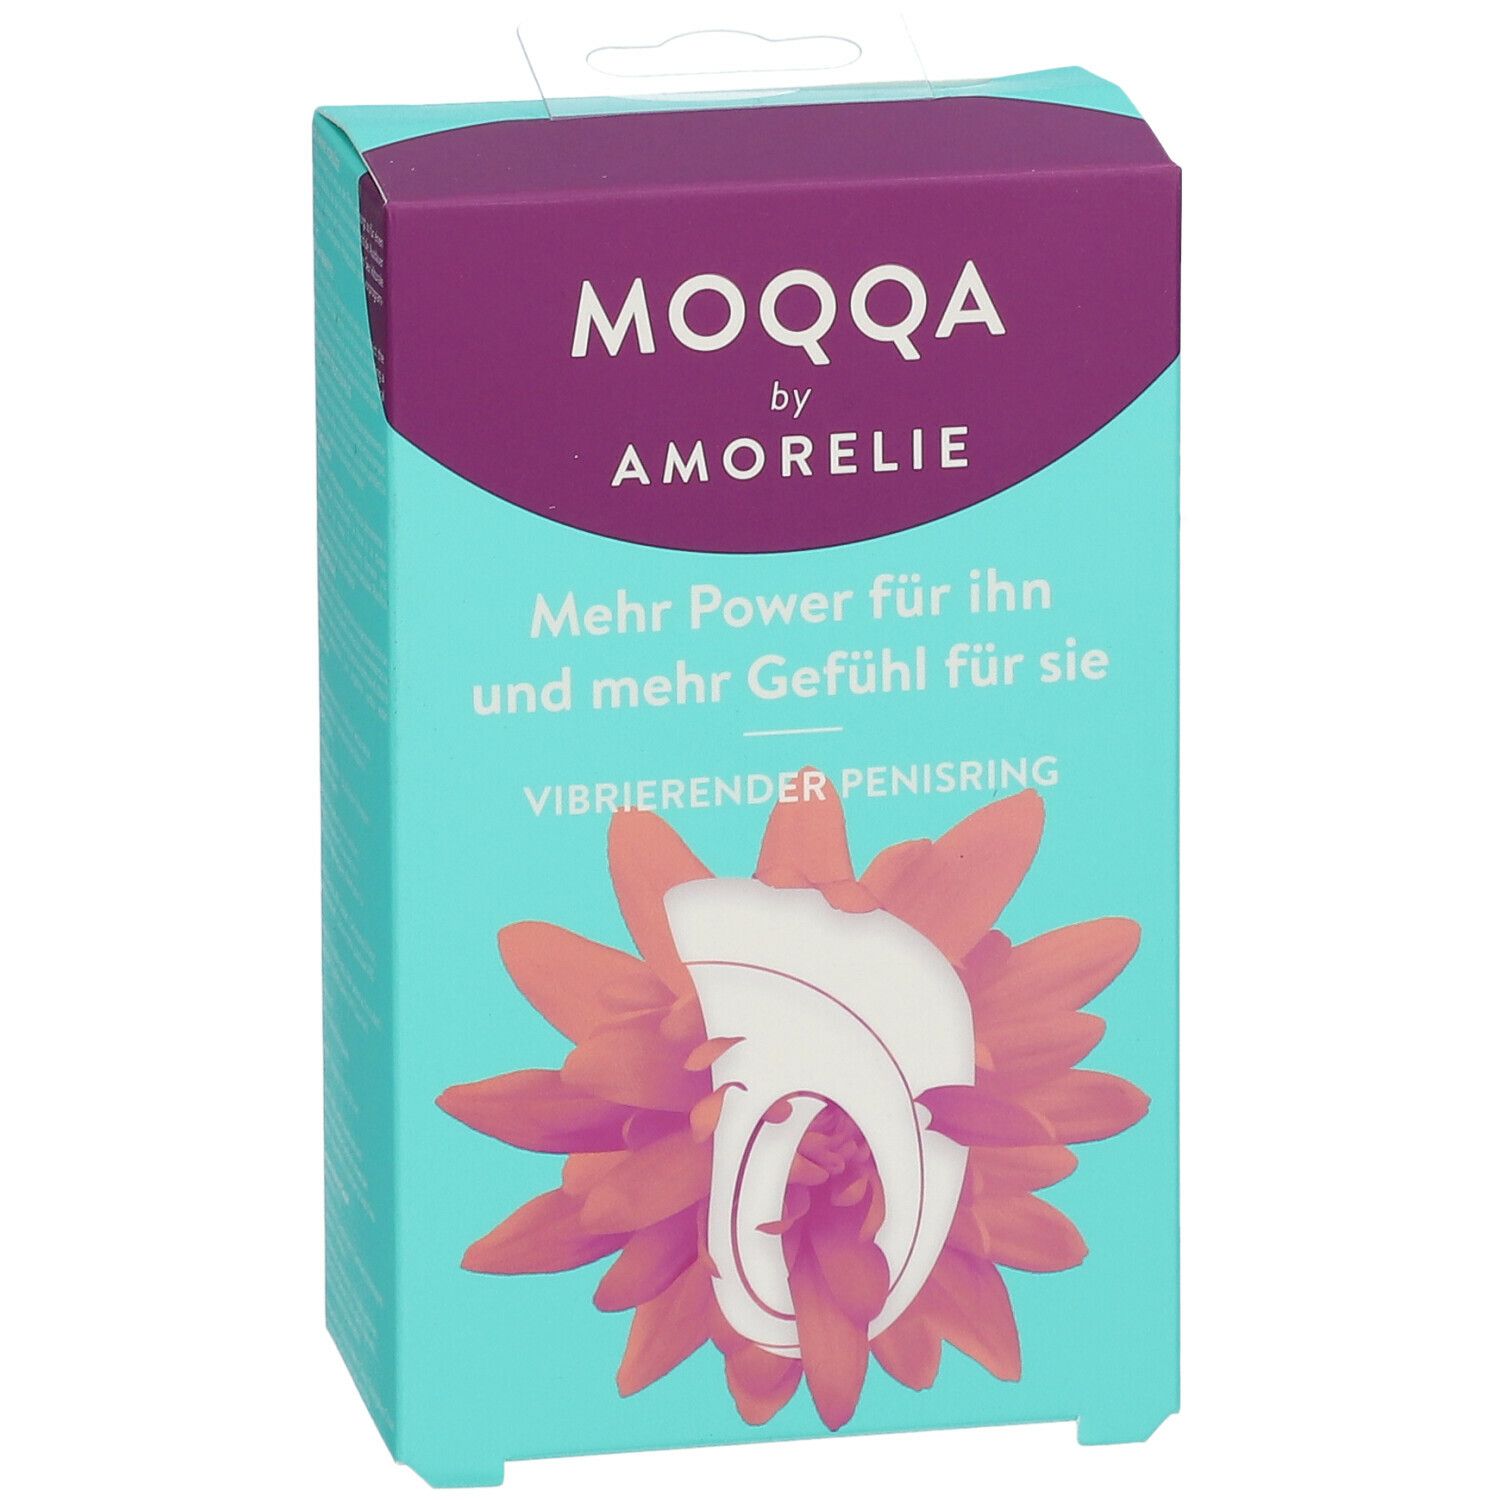 MOQQA by AMORELIE Vibrierender Penisring